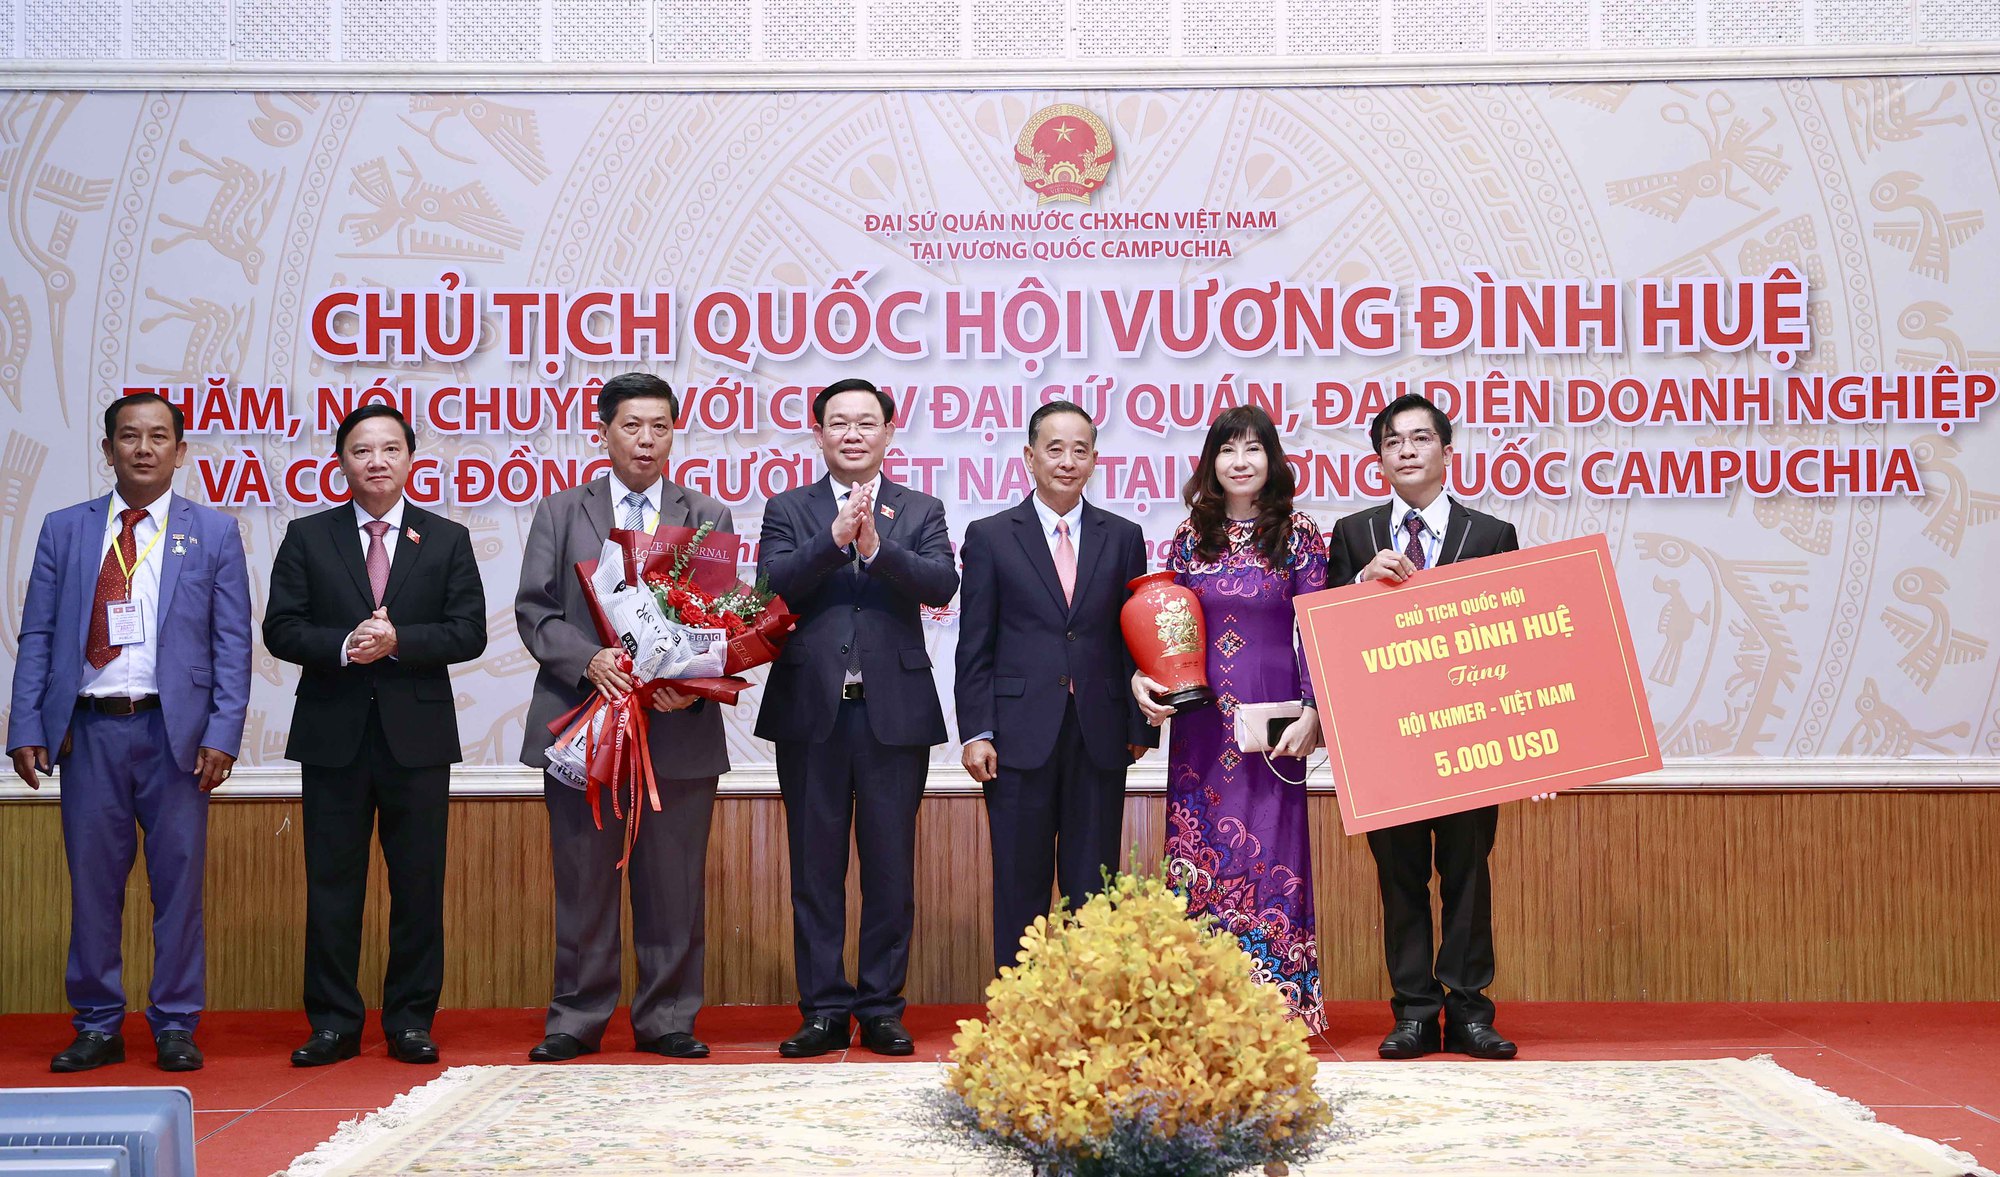 Chủ tịch Quốc hội Vương Đình Huệ gặp cộng đồng người Việt Nam tại Campuchia - Ảnh 11.